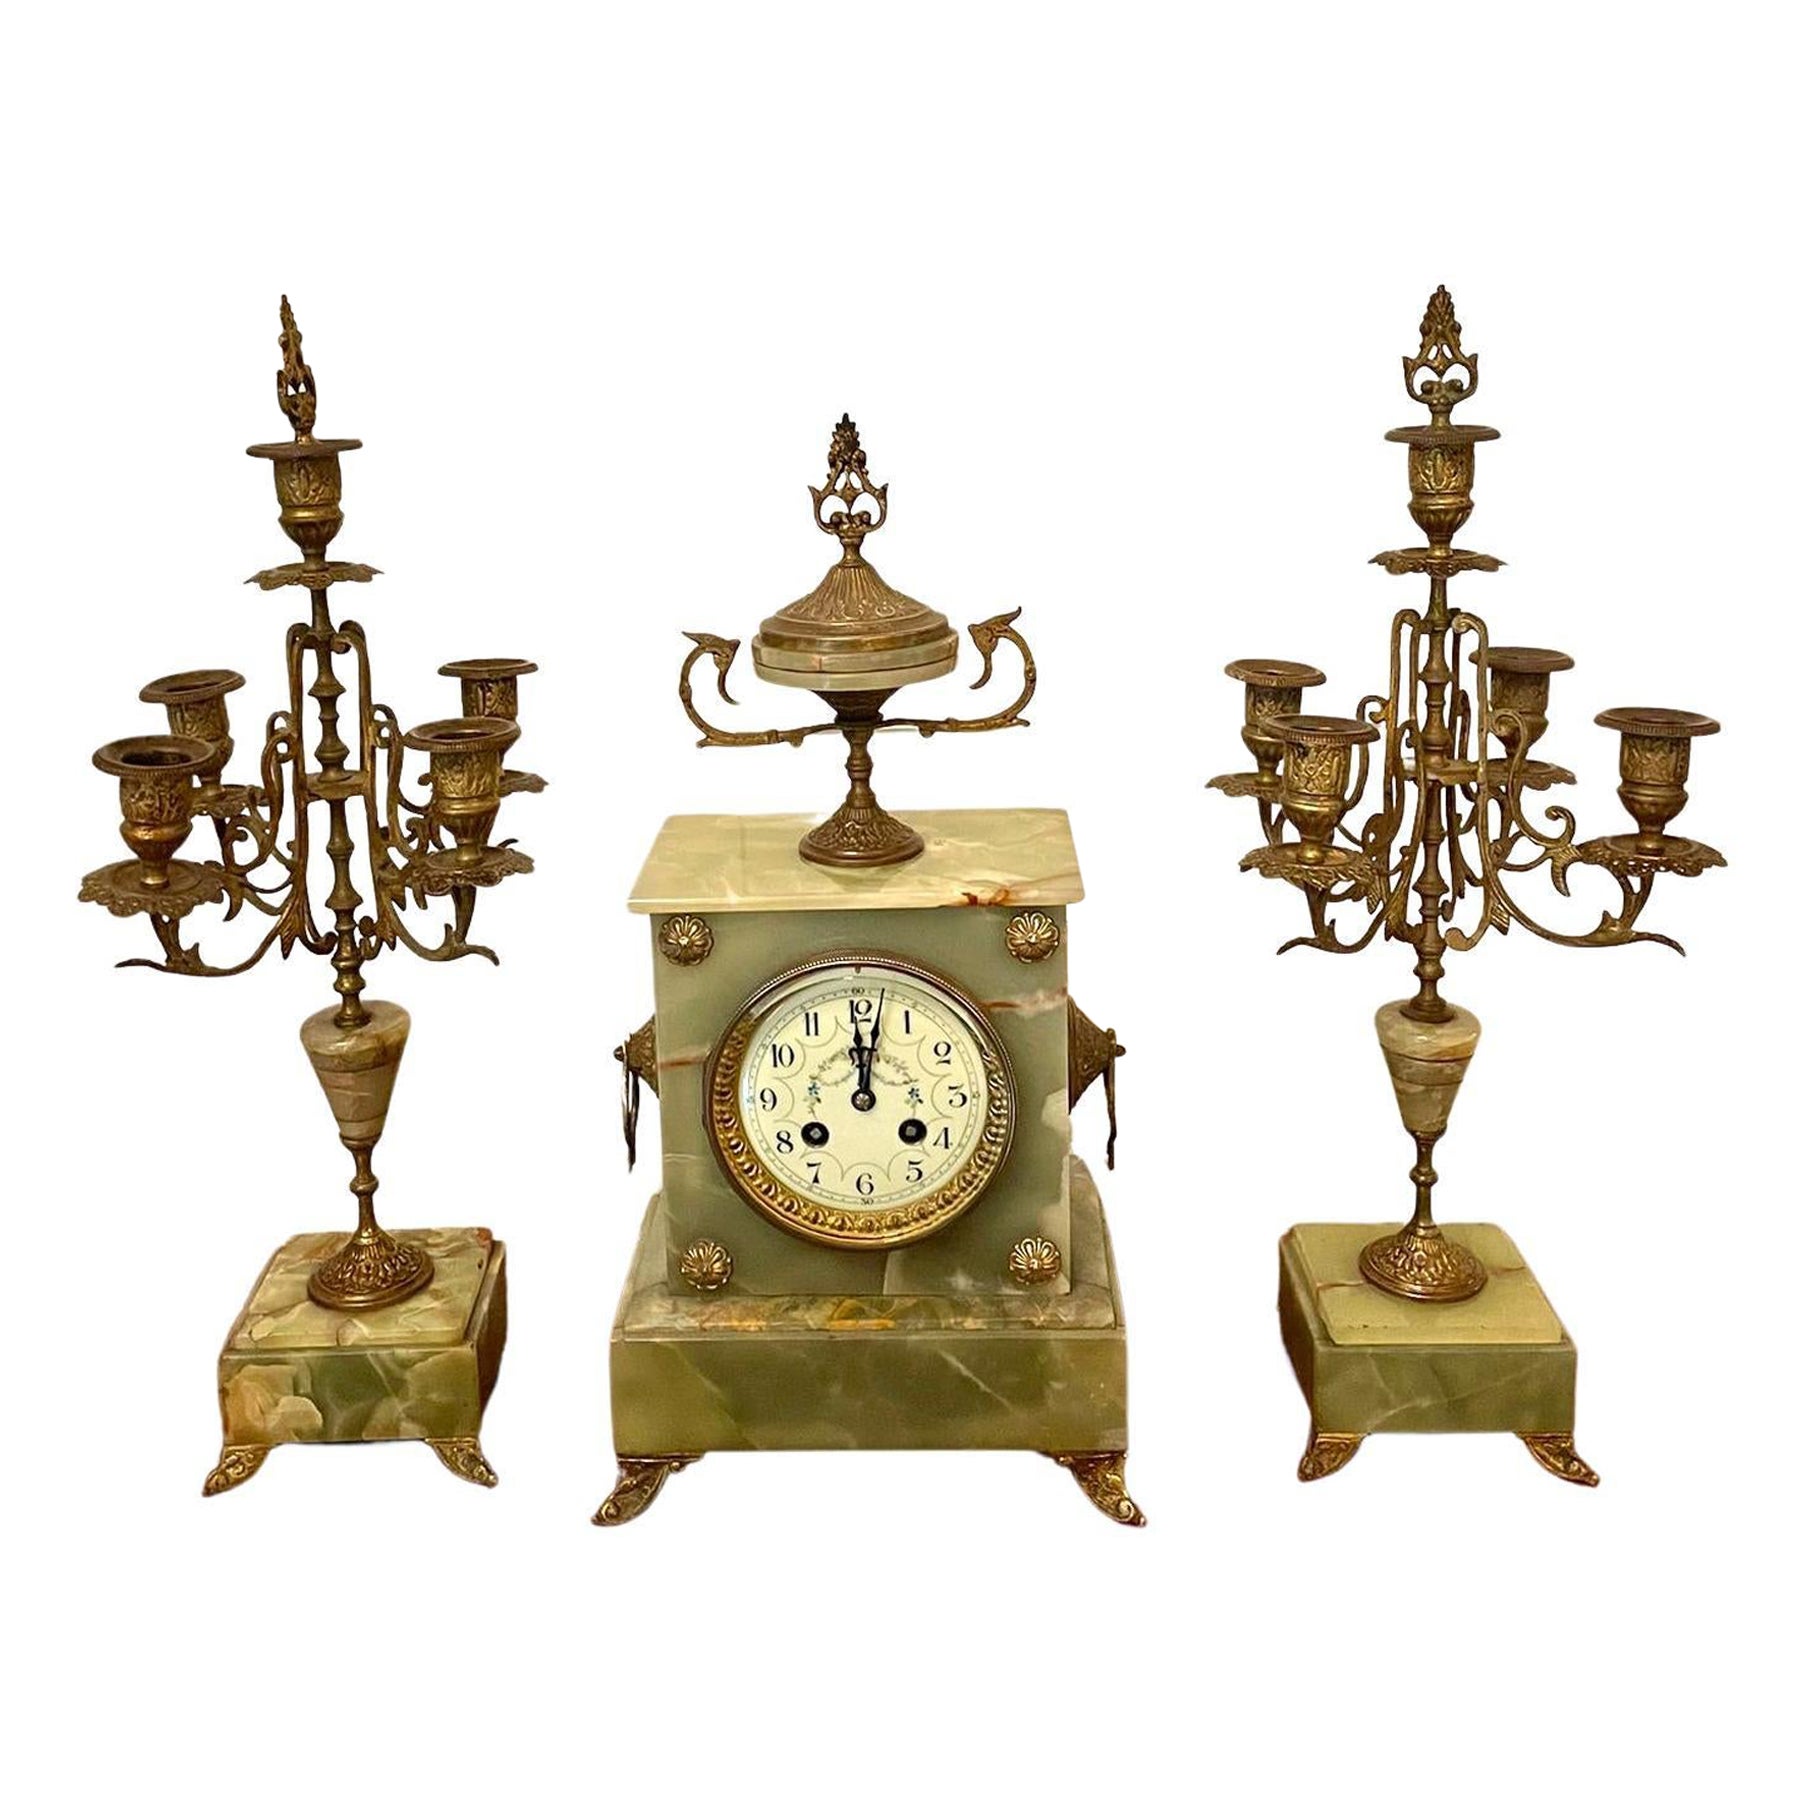 Garniture d'horloge ornée d'onyx vert de qualité victorienne ancienne